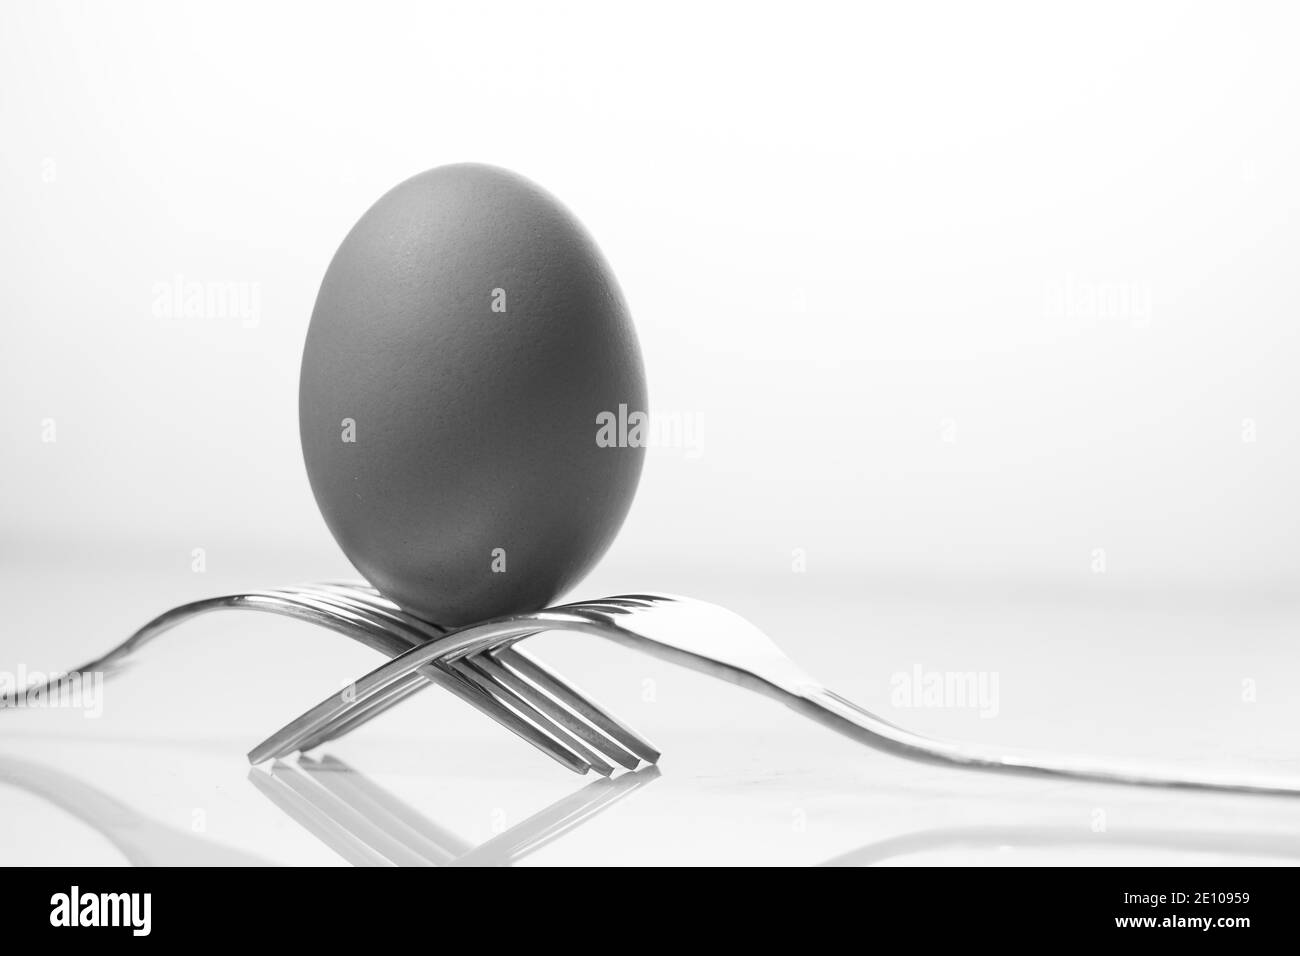 Huhn Eier Schwarzweiß Stockfotos und  bilder   Alamy